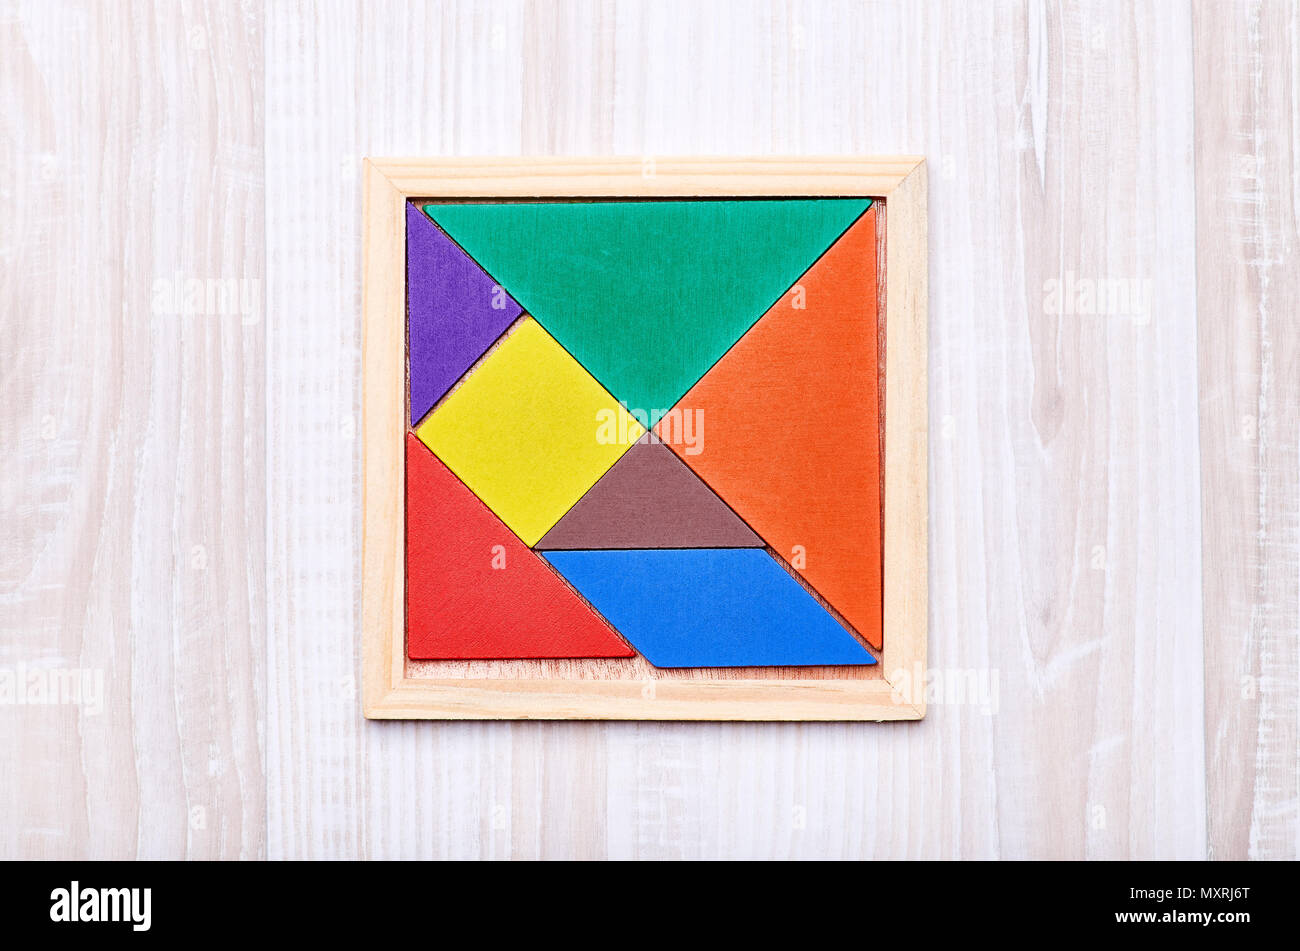 Un tangram compuesto de piezas de colores con formas geométricas, recopilados en un cuadrado sobre un fondo de madera ligera Foto de stock